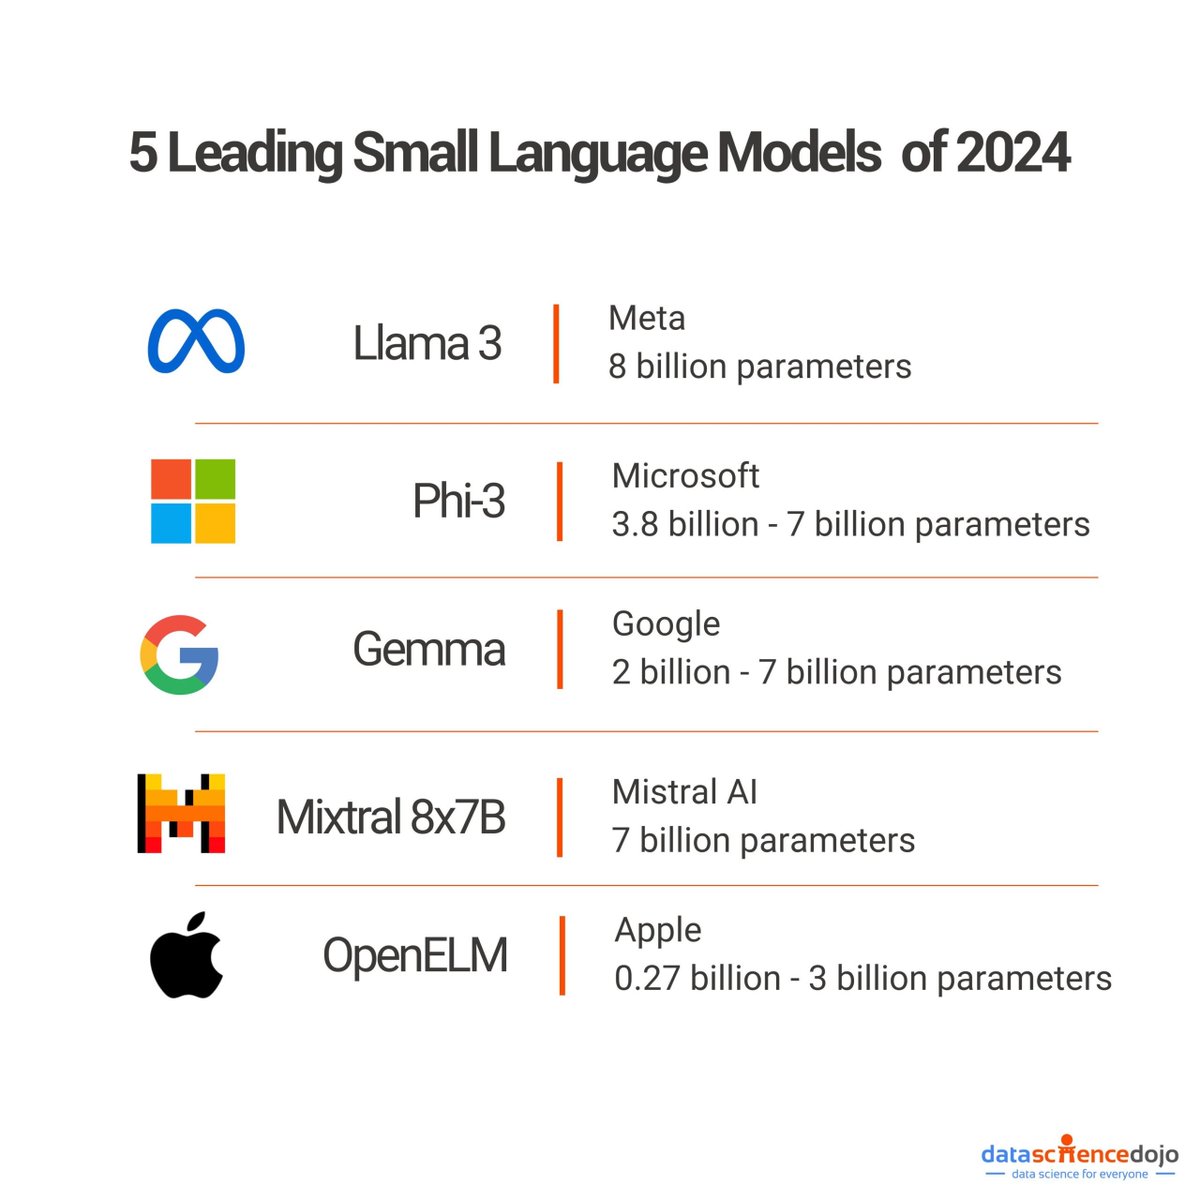 Les meilleurs petits modèles de langages en 2024🤖 via @DataScienceDojo #IA #LLM #Transfonum